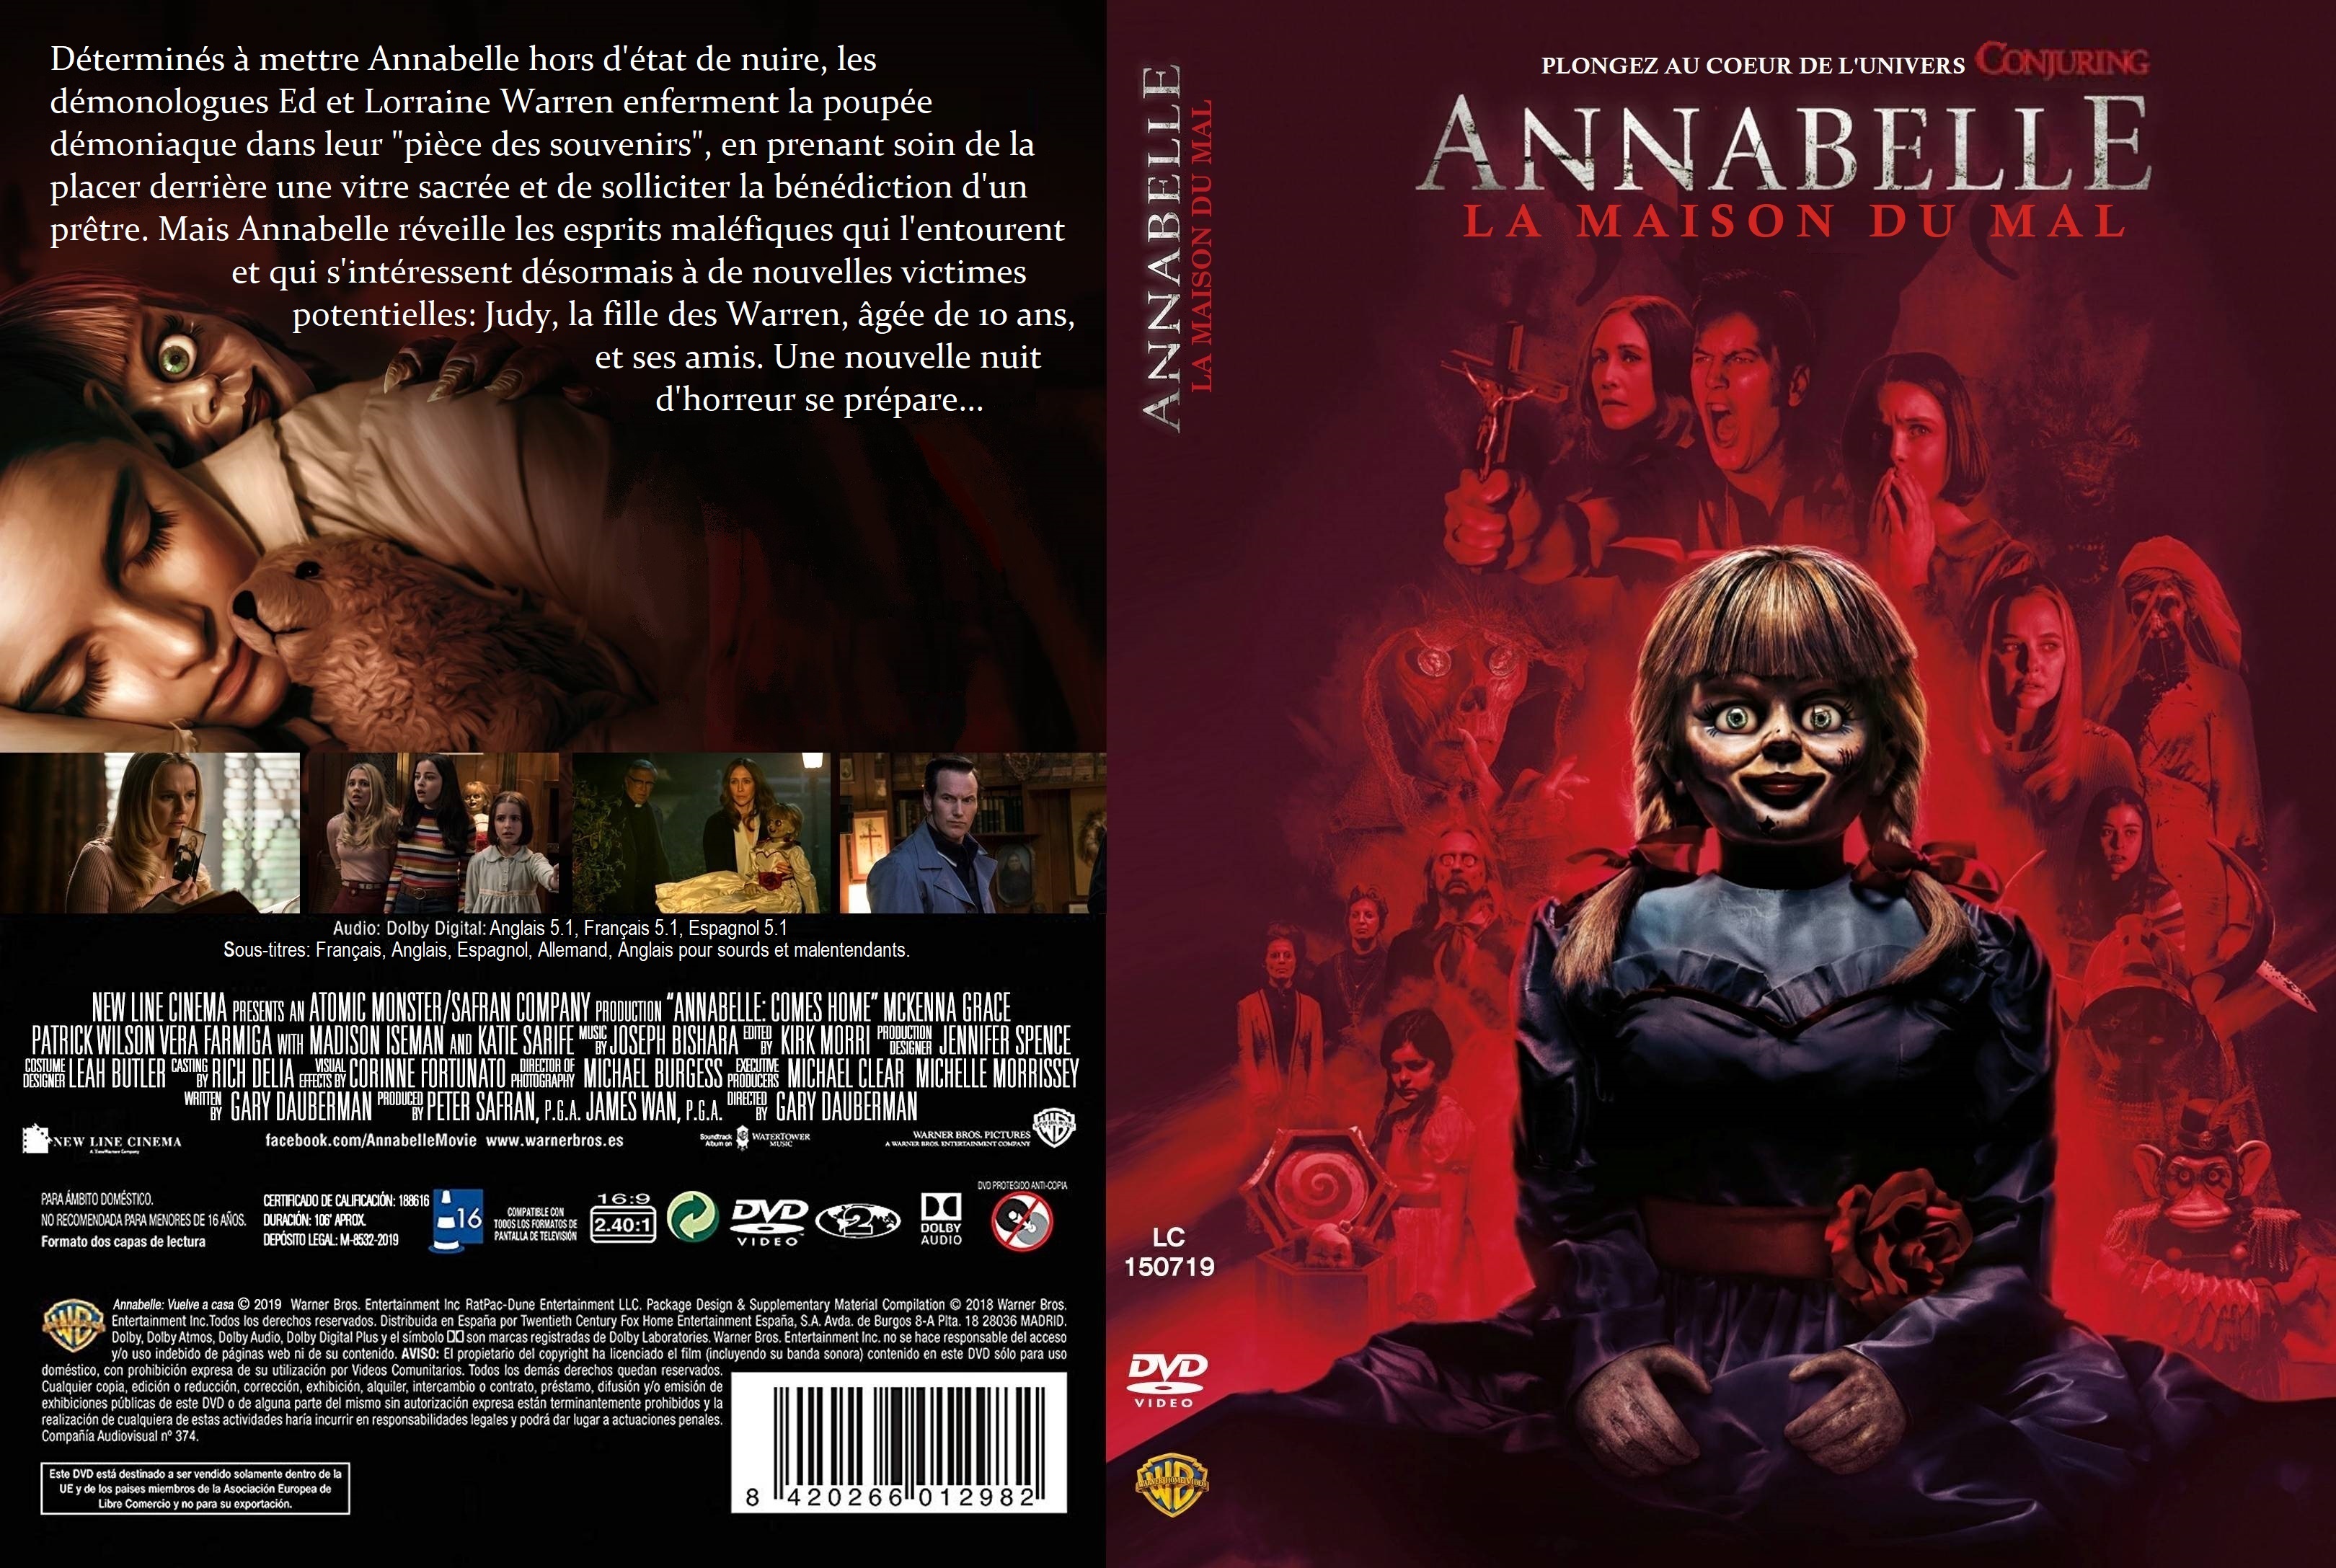 Jaquette DVD Annabelle 3 La maison du mal custom